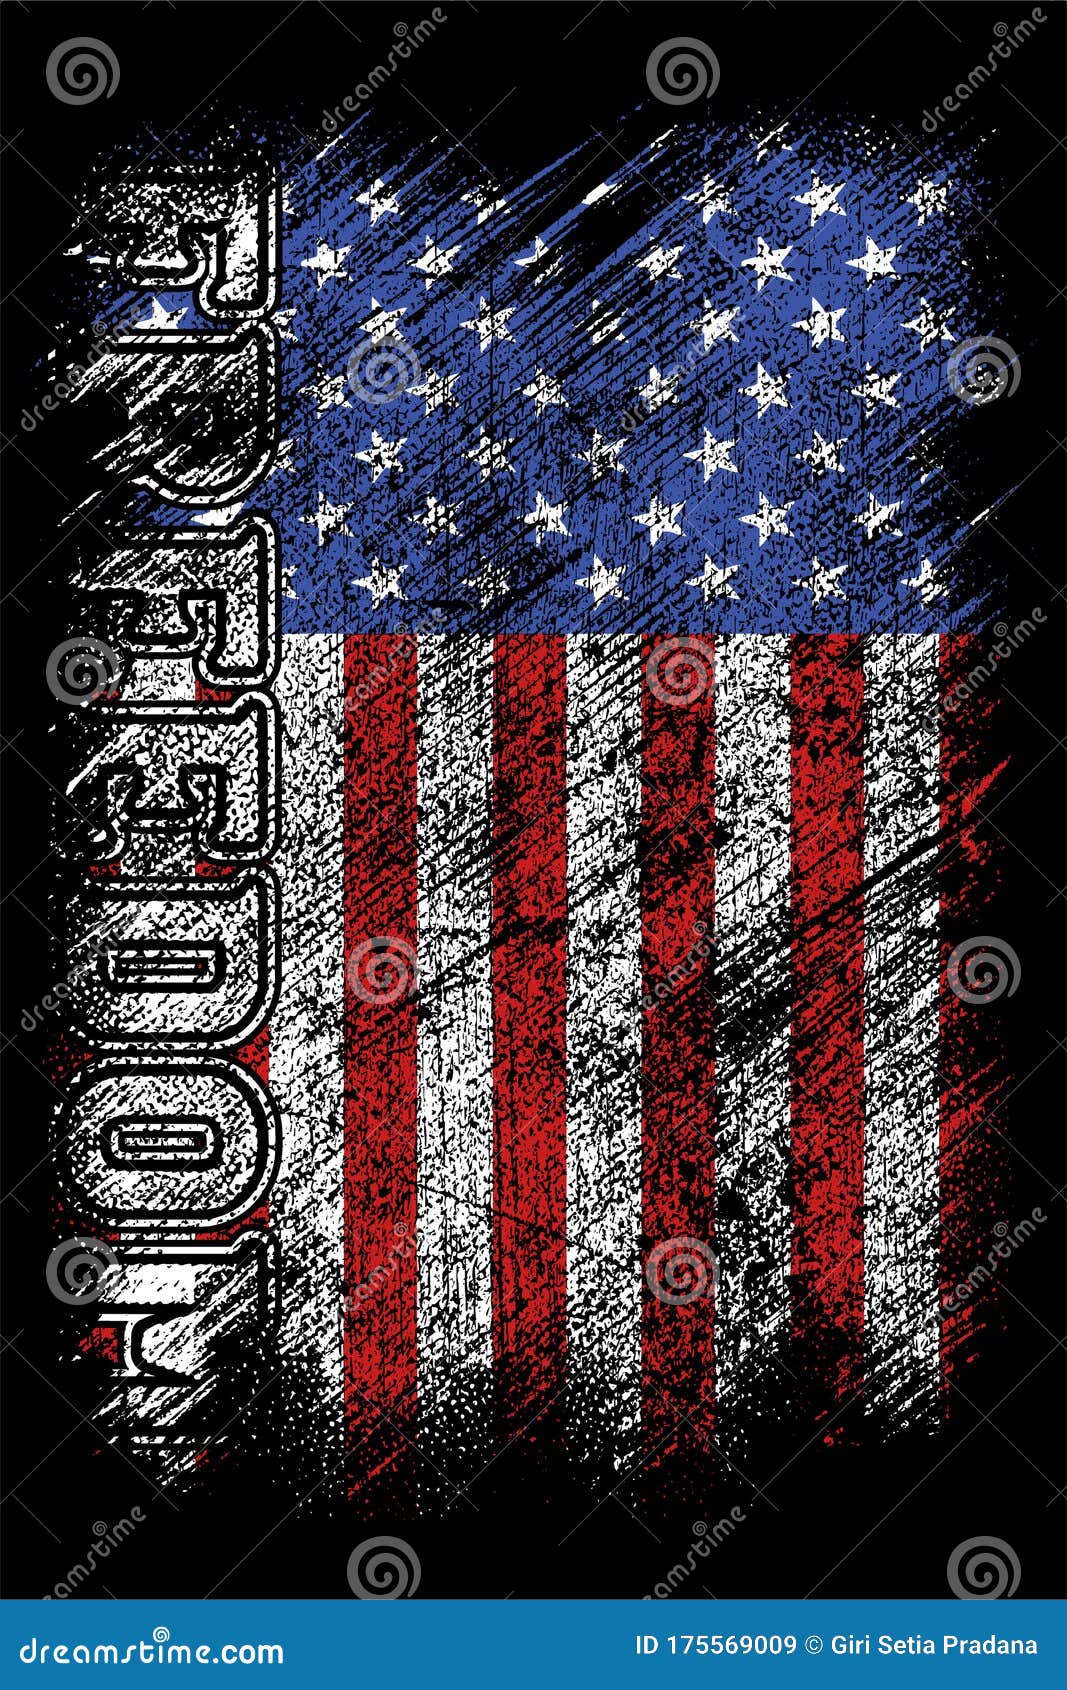 american flag desktop backgrounds